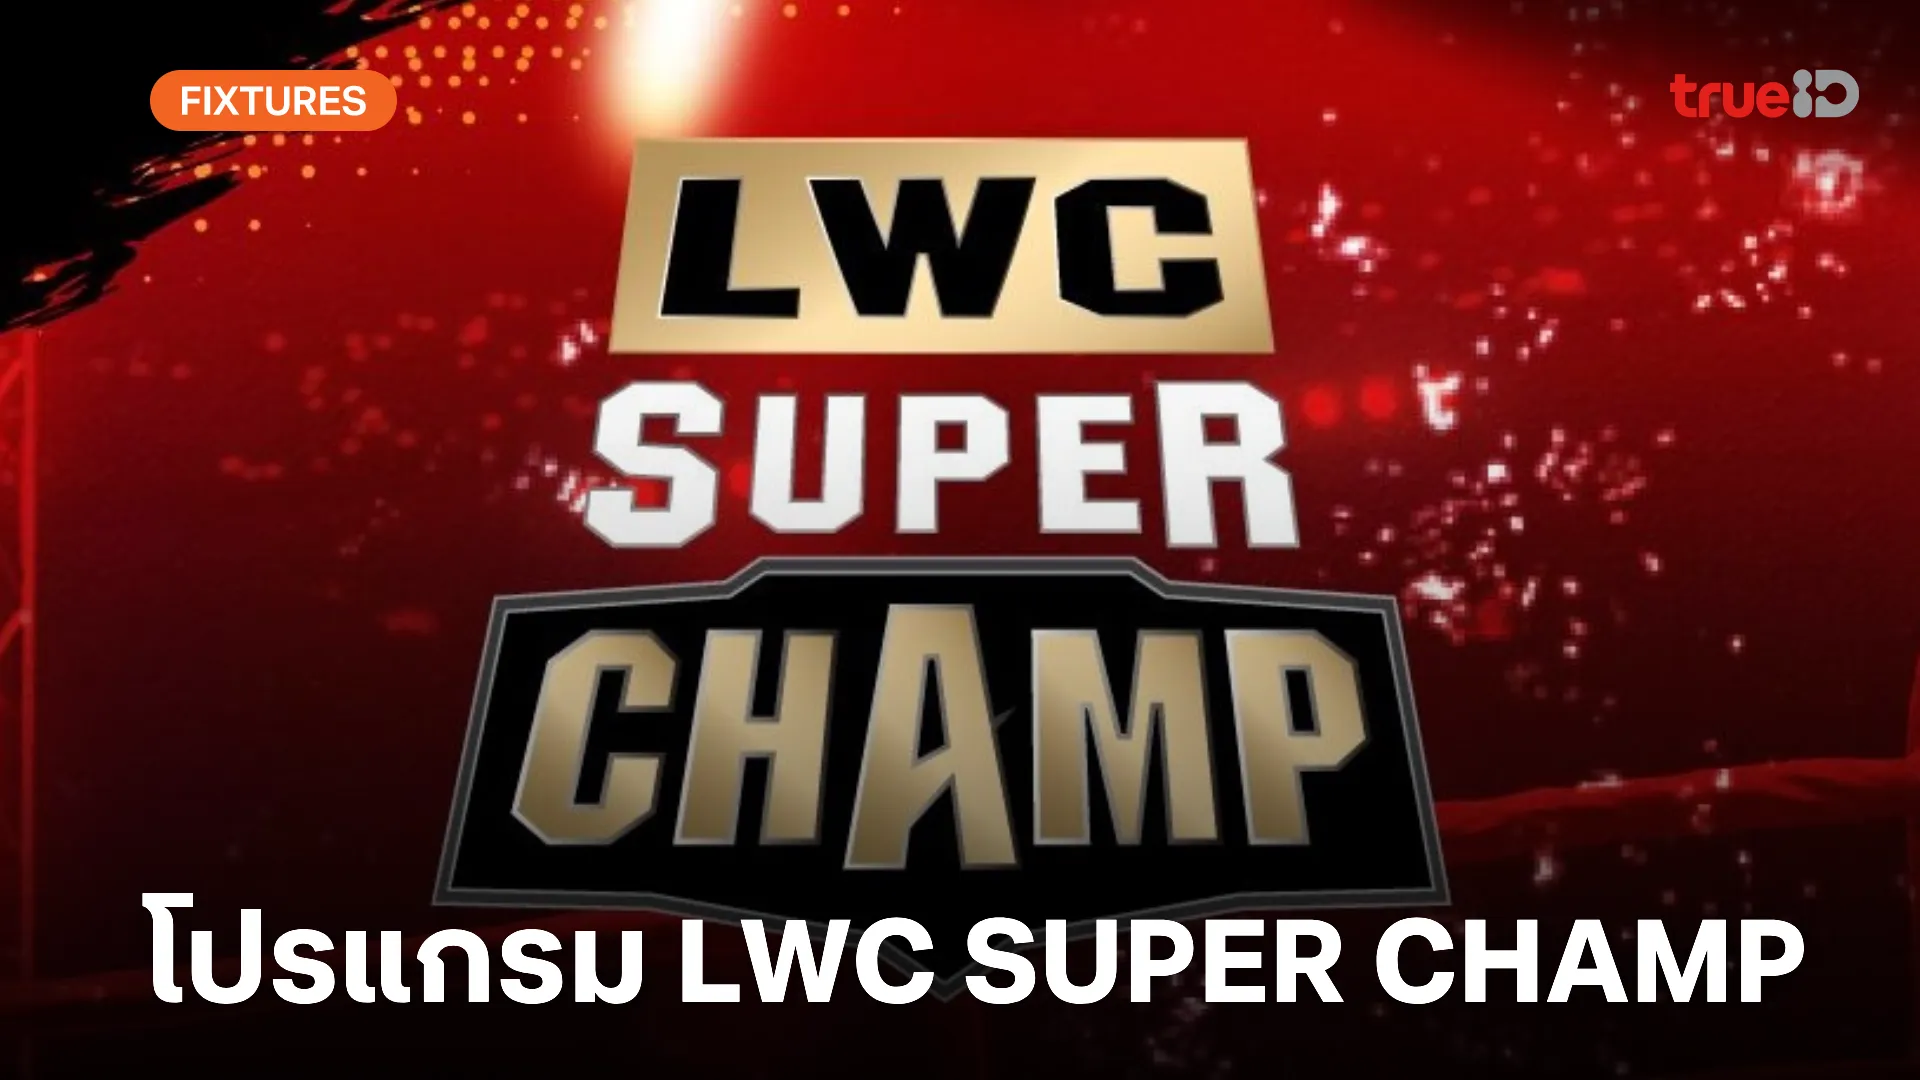 โปรแกรมมวยไทย ช่อง 8 LWC Super Champ วันเสาร์ที่ 27 เม.ย. พร้อมลิ้งก์ดูมวยสด